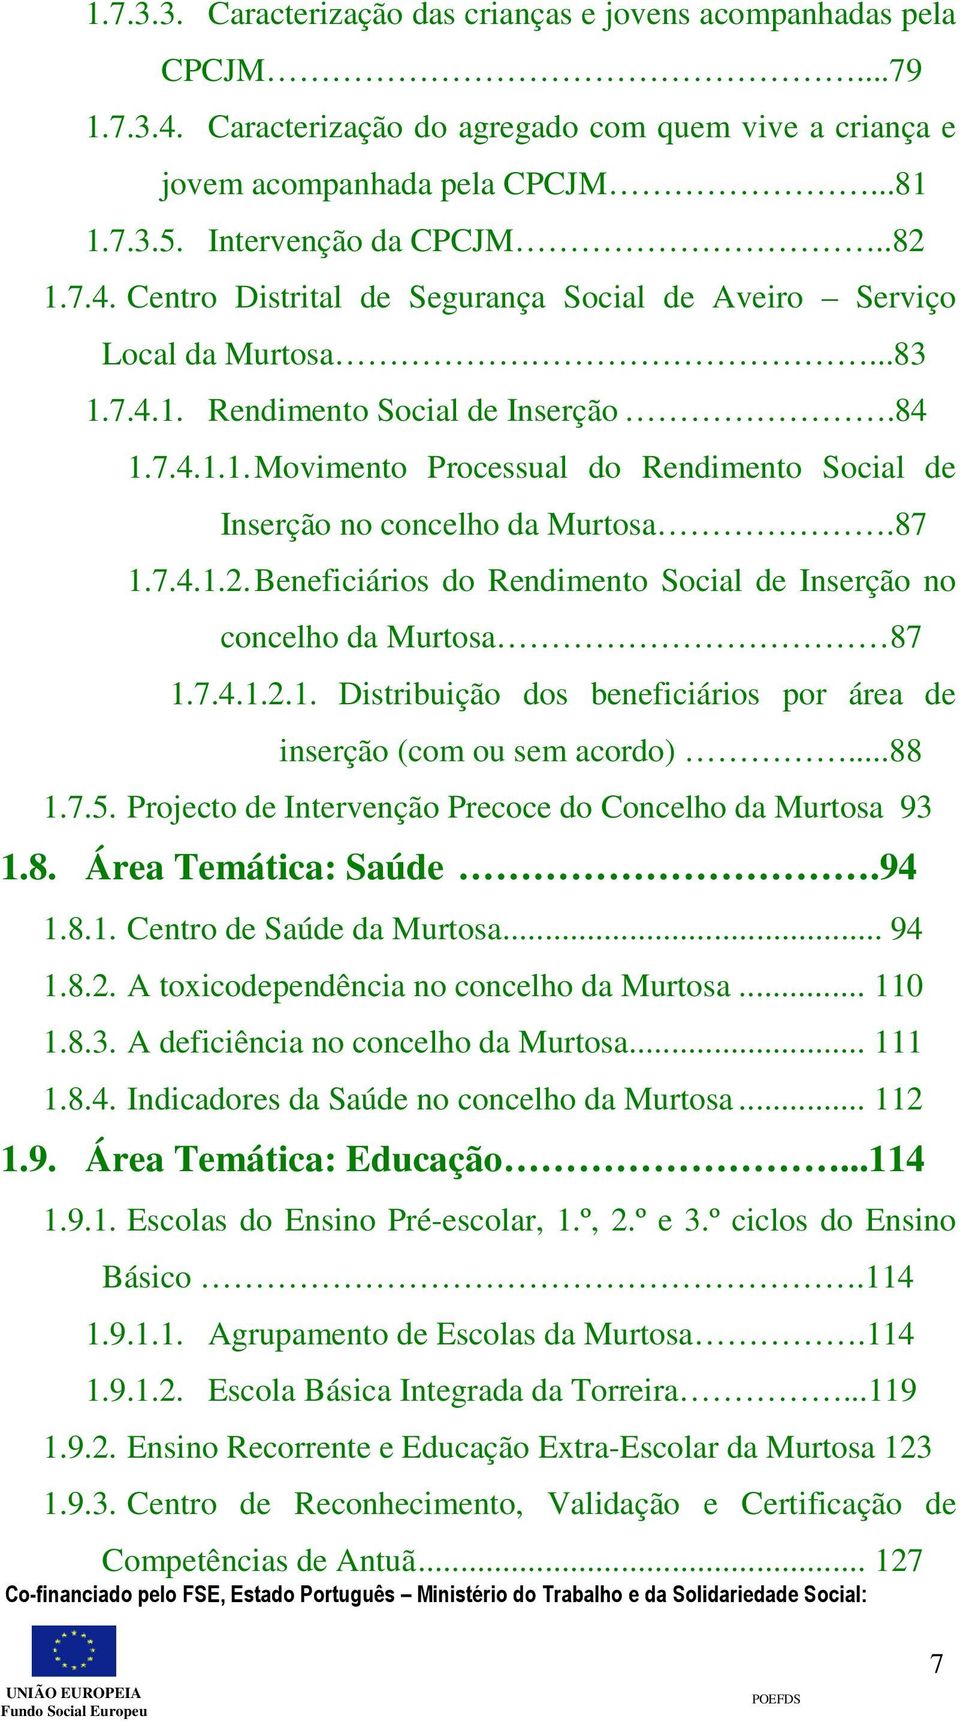 87 1.7.4.1.2. Beneficiários do Rendimento Social de Inserção no concelho da Murtosa 87 1.7.4.1.2.1. Distribuição dos beneficiários por área de inserção (com ou sem acordo)...88 1.7.5.